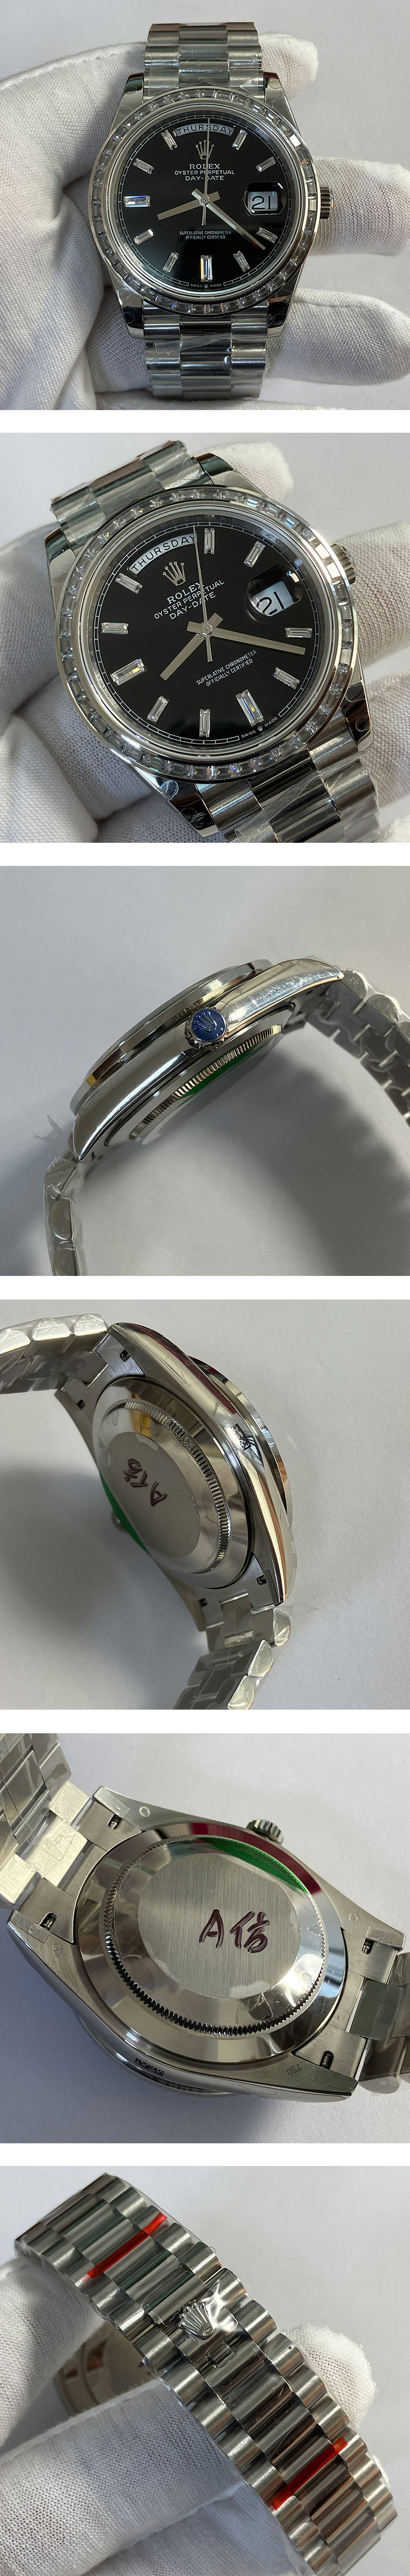 信頼の腕時計ストア ROLEX228396TBR デイデイト 40mm ブラック 全面ダイヤ カレンダー